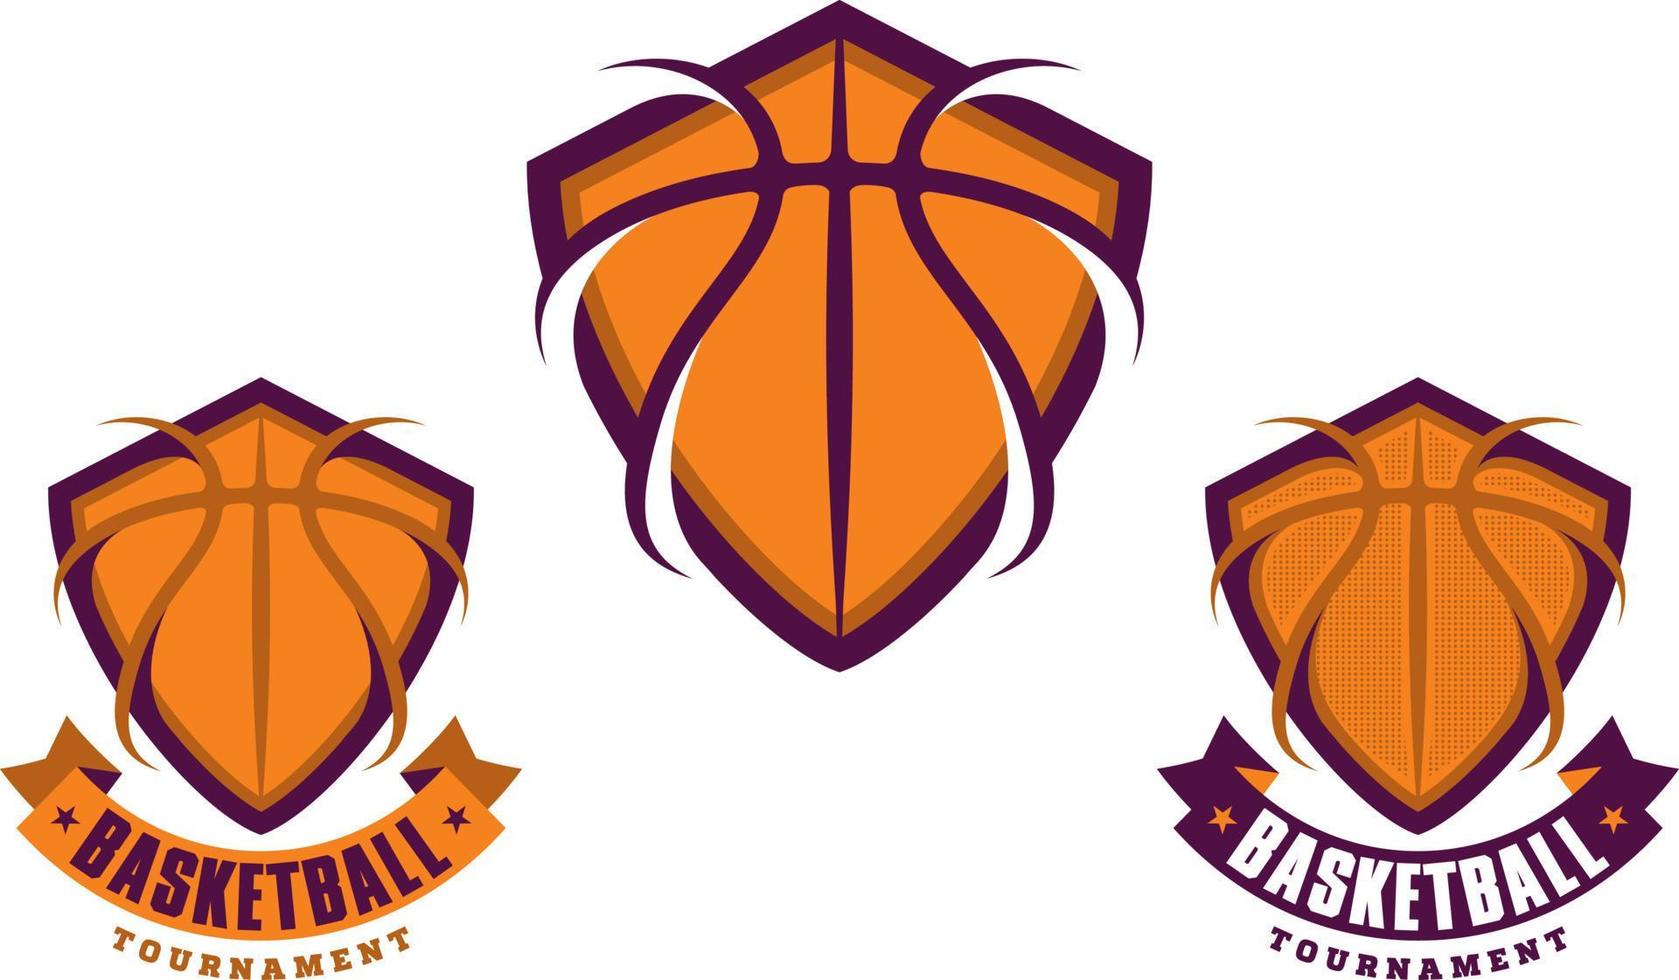 conjunto de iconos, logotipos o emblemas deportivos de baloncesto vector